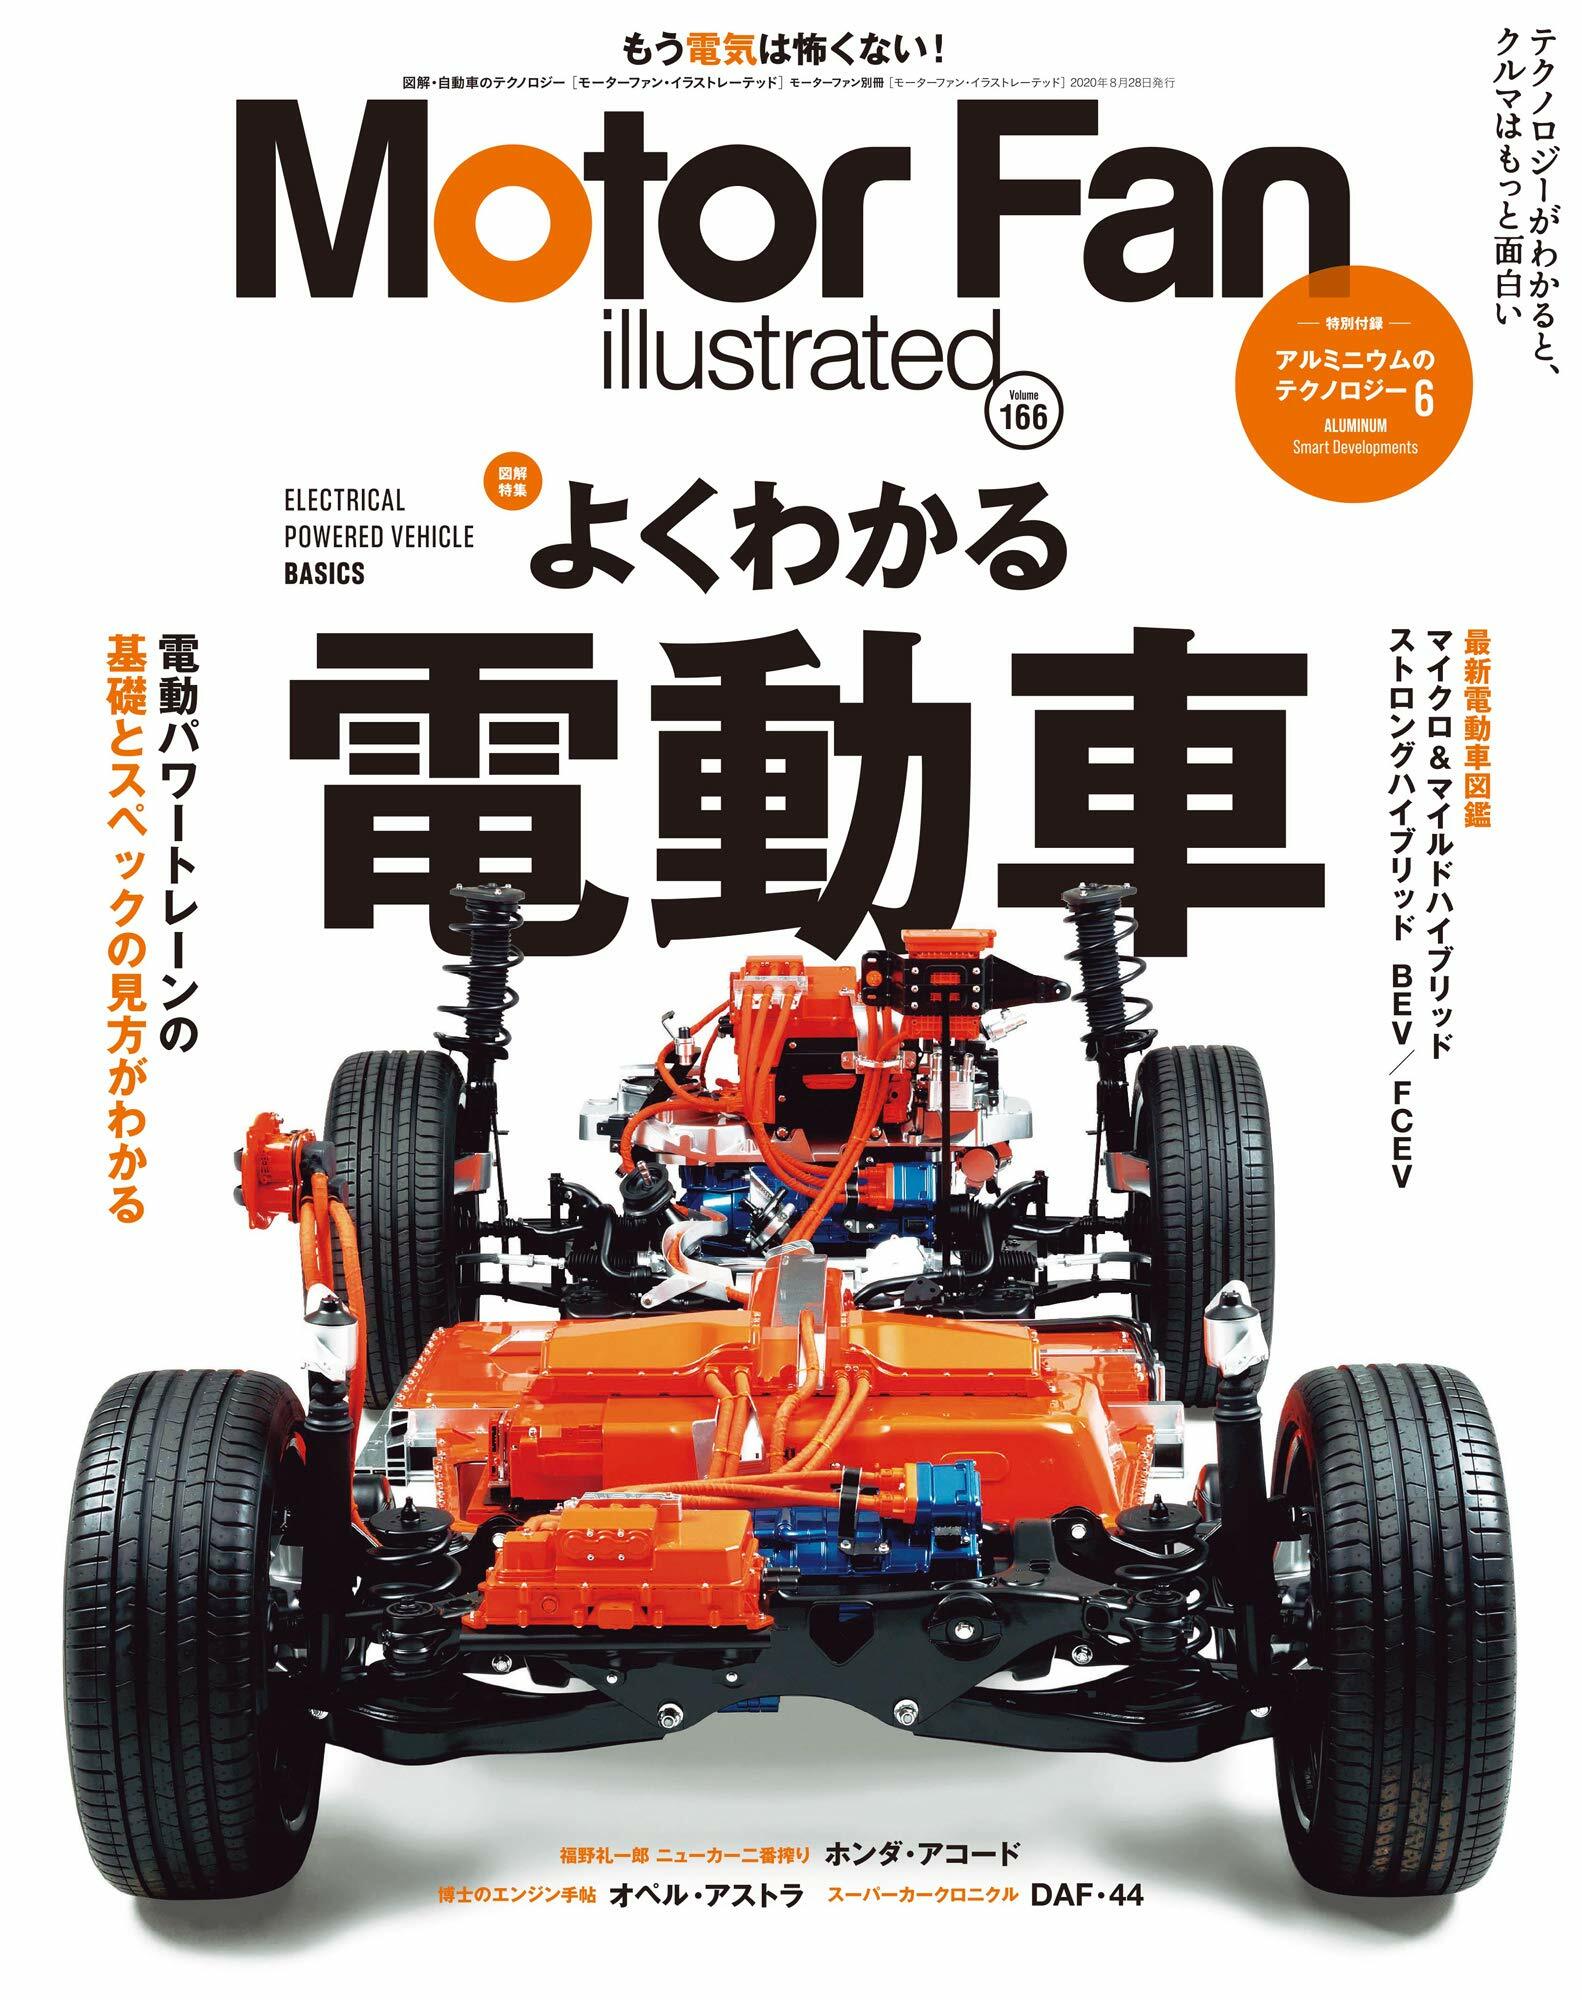 MOTOR FAN illustrated - モ-タ-ファンイラストレ-テッド - Vol.166 (モ-タ-ファン別冊)